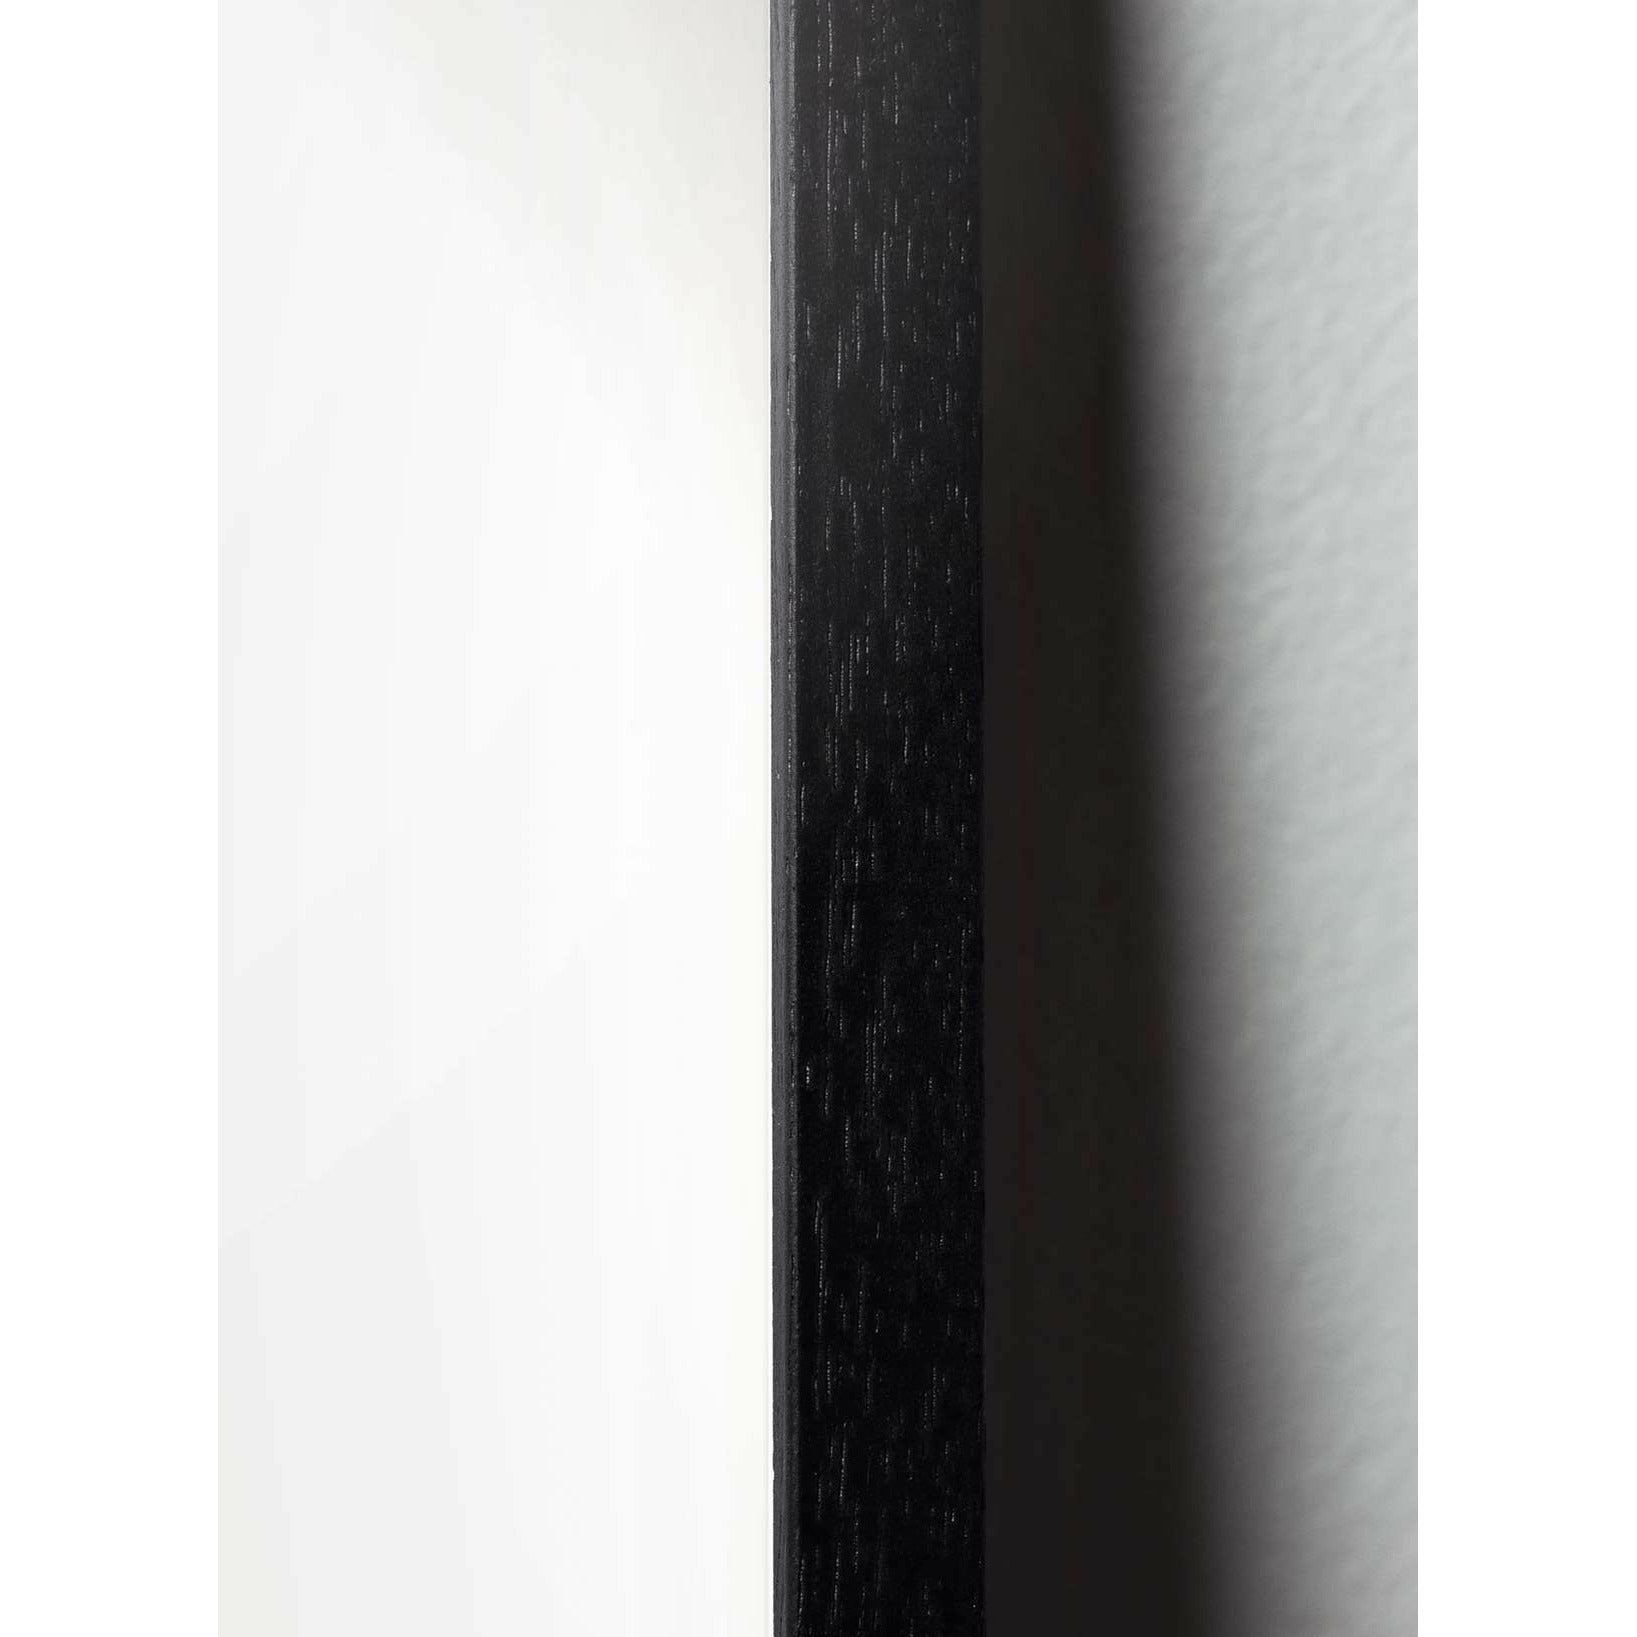 Plakát s labuťovou sponou s labuťovou sponou, rám v černém lakovaném dřevu 70x100 cm, růžové pozadí